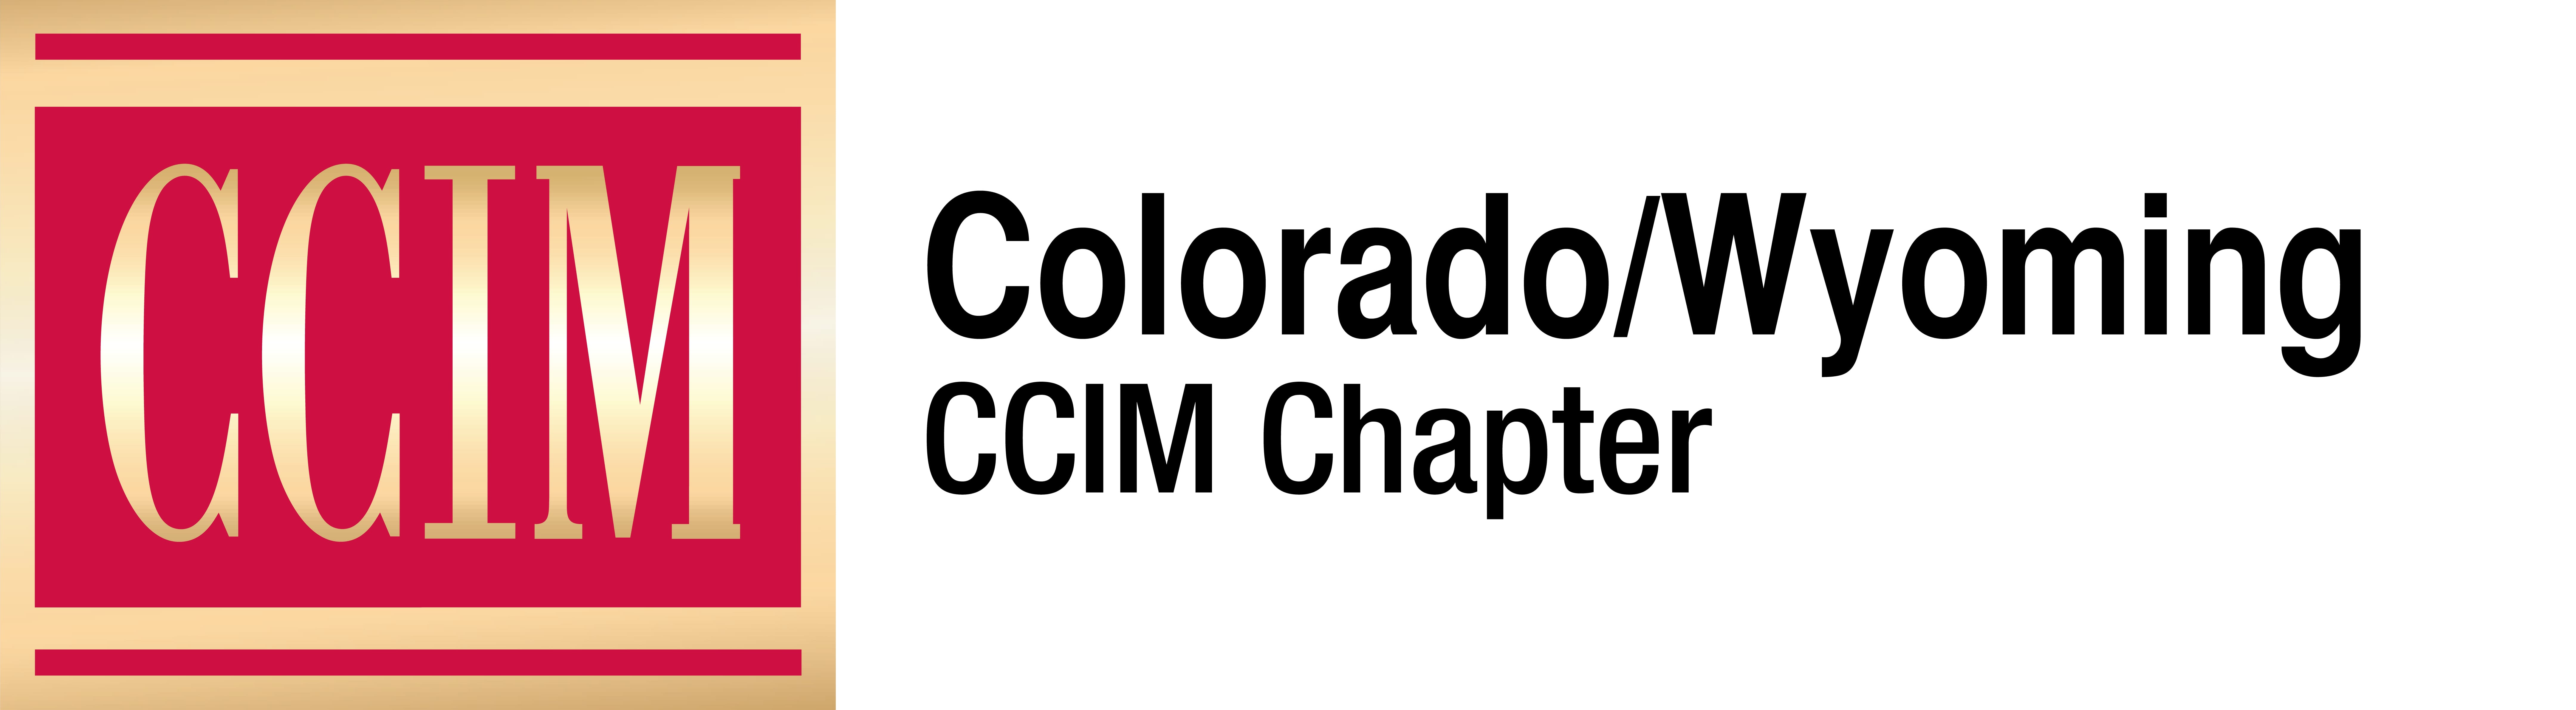 Ccim Logo - Ccim Logo 4 Color CO WY